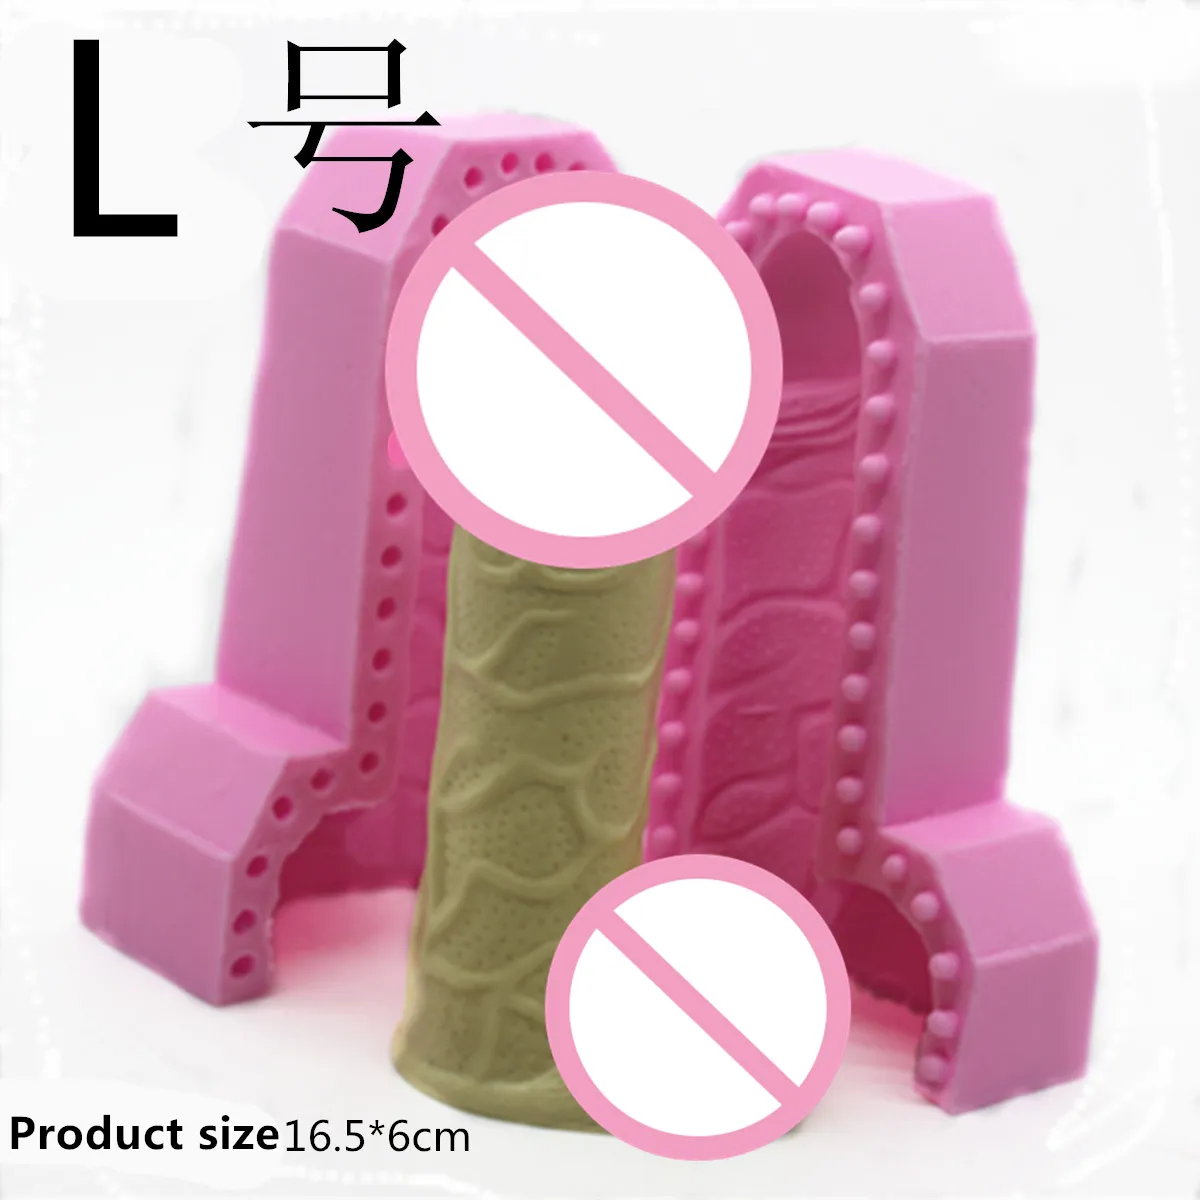 3D Beauty Penis silikonowe narzędzia do dekorowania ciast masą cukrową foremka na czekoladki mydło foremki na świece E868 201023